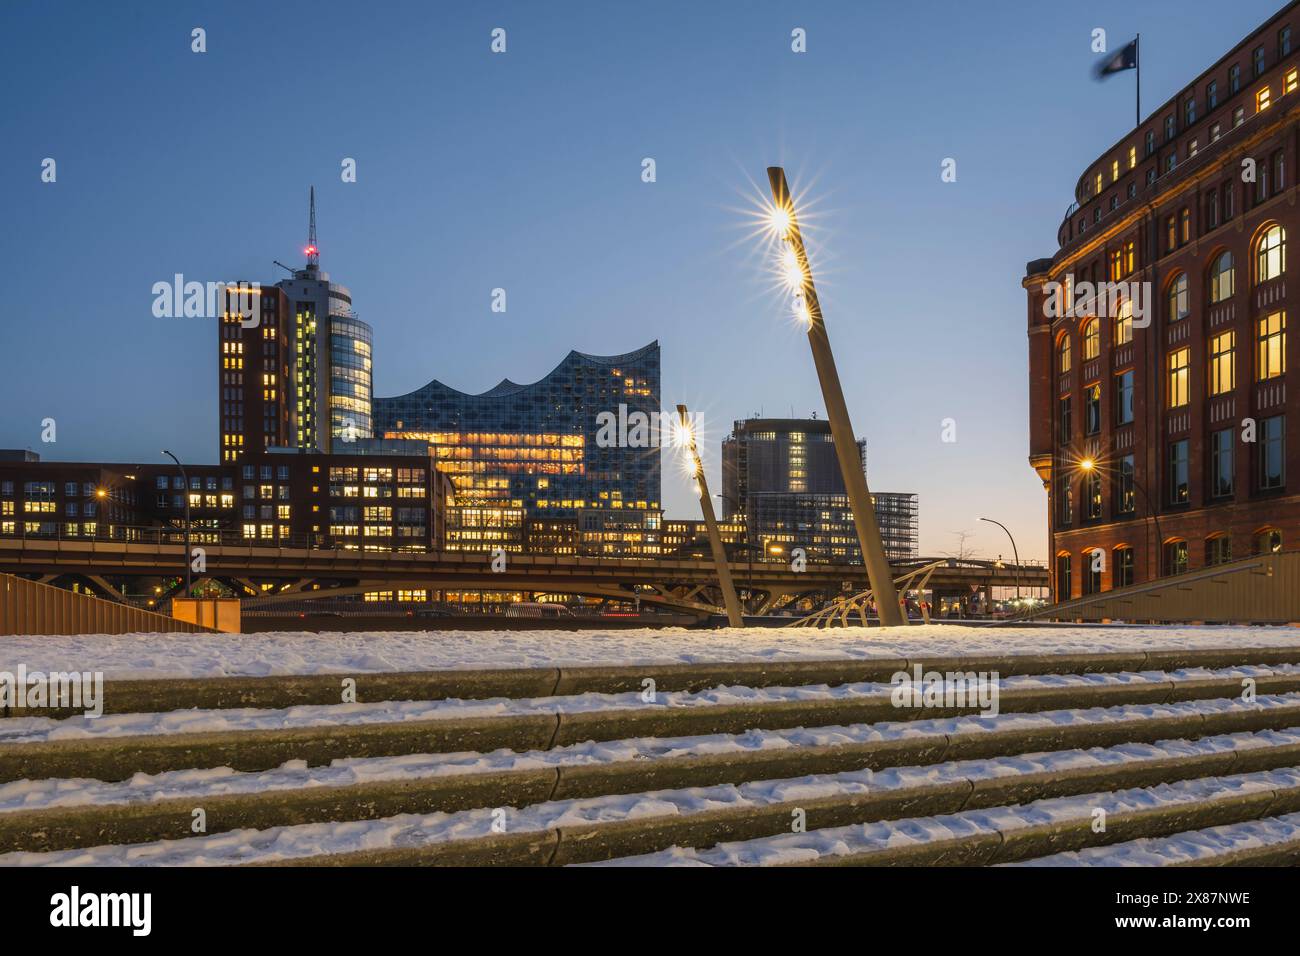 Allemagne, Hambourg, vue de Schaartorbrucke à Elbphilharmonie au crépuscule hivernal Banque D'Images